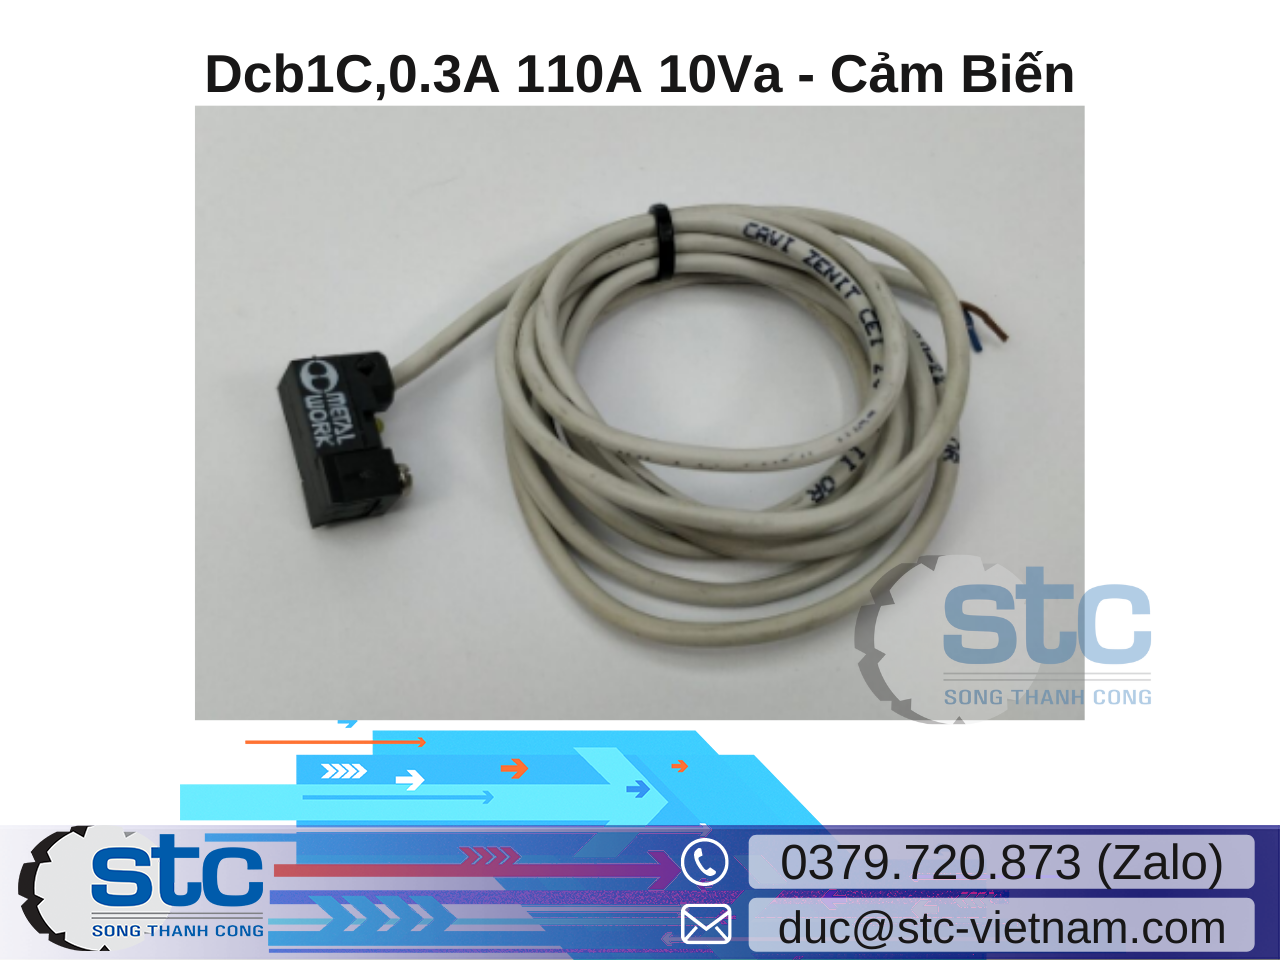 dcb1c-0-3a-110a-10va-cam-bien-turck-vietnam.png